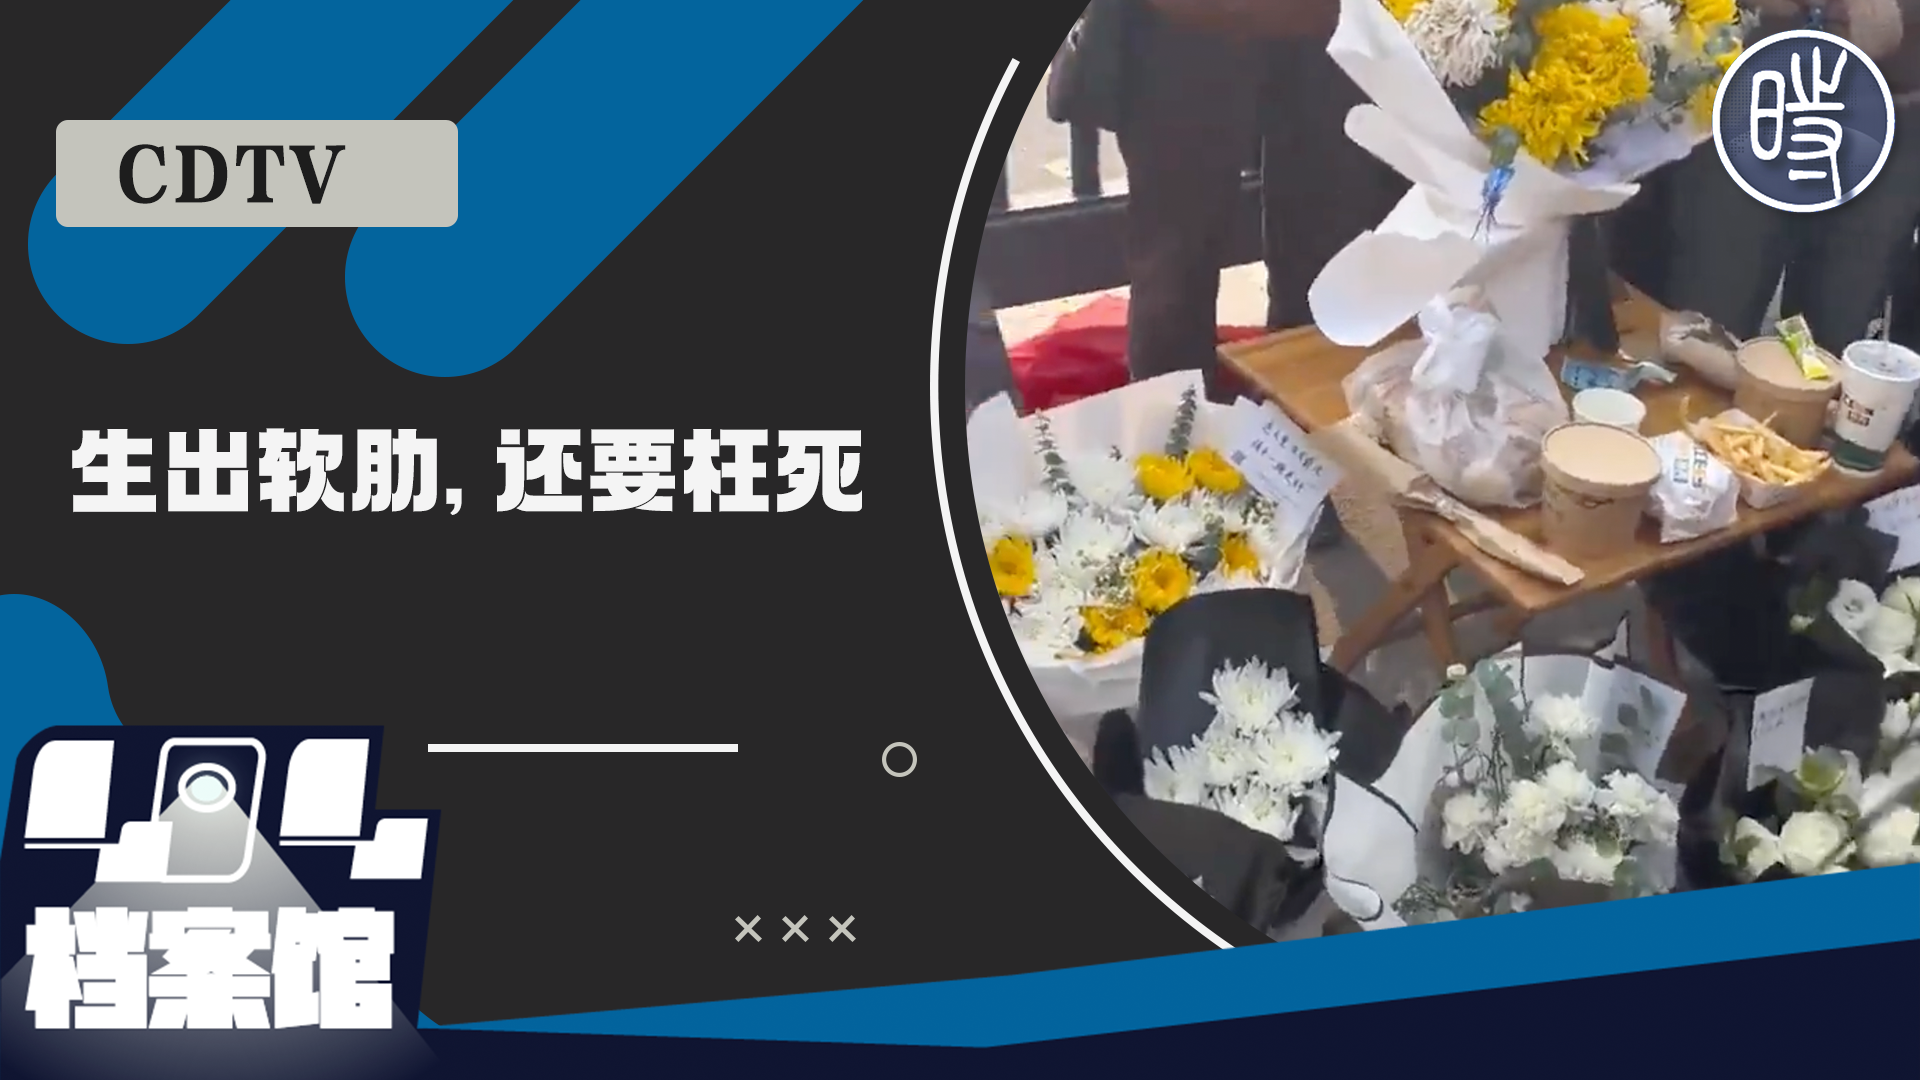 【CDTV】河南商丘宁陵县育华园高级中学学生校内死亡，民众自发聚集要求当局给出真相